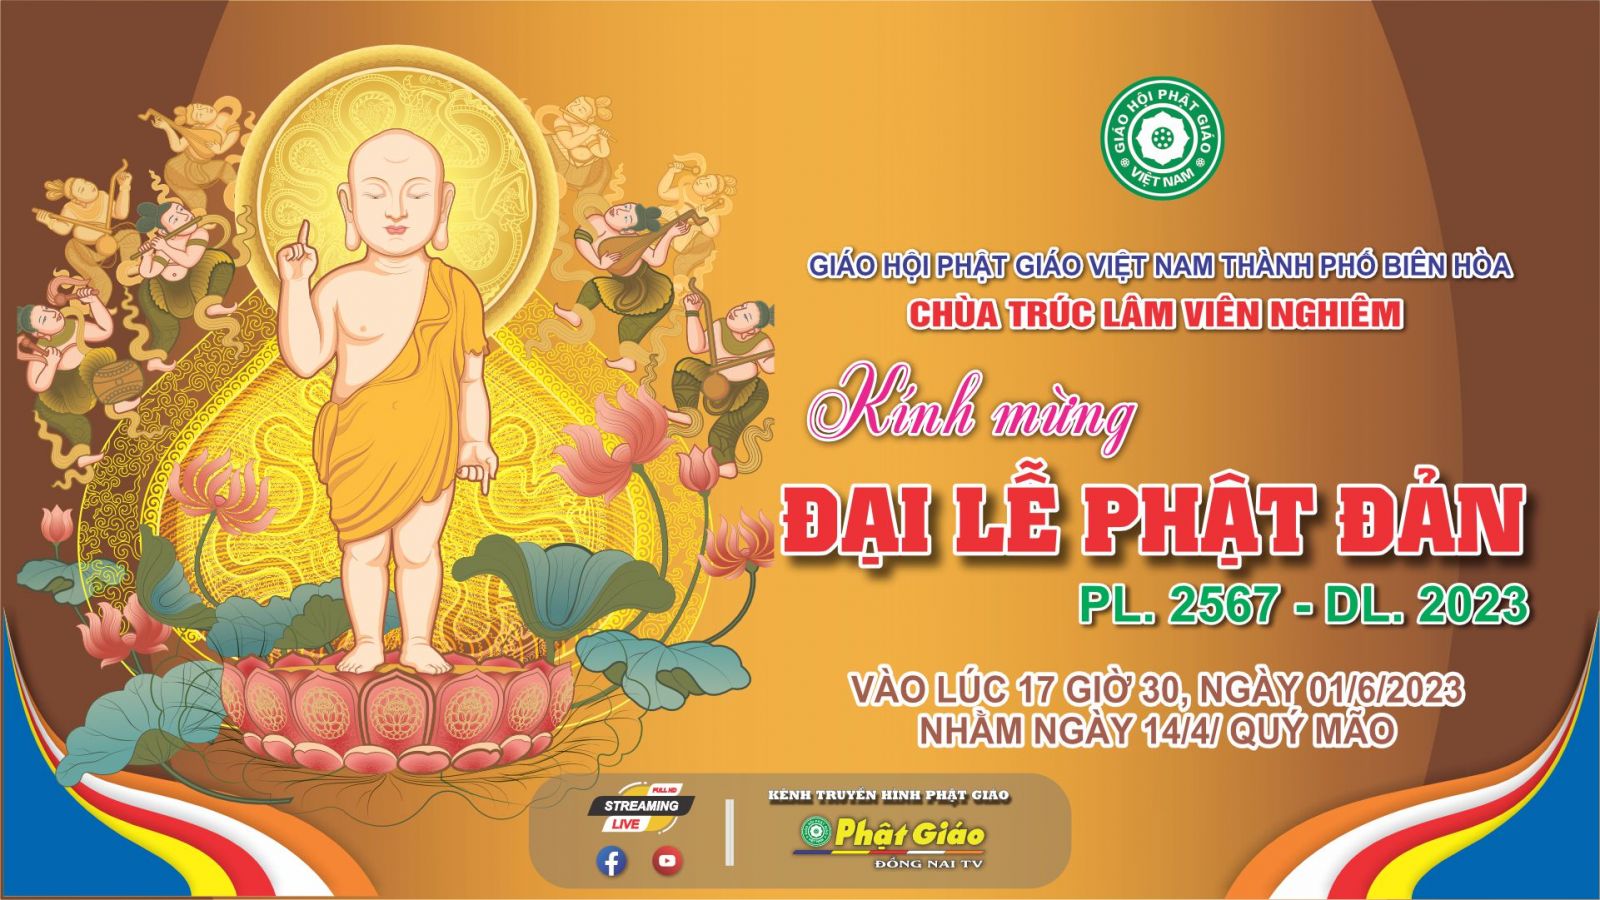 Trực tiếp: Trang nghiêm Đại lễ Phật đản PL. 2567 - DL. 2023 tại Chùa Viên Nghiêm Tp. Biên Hòa.